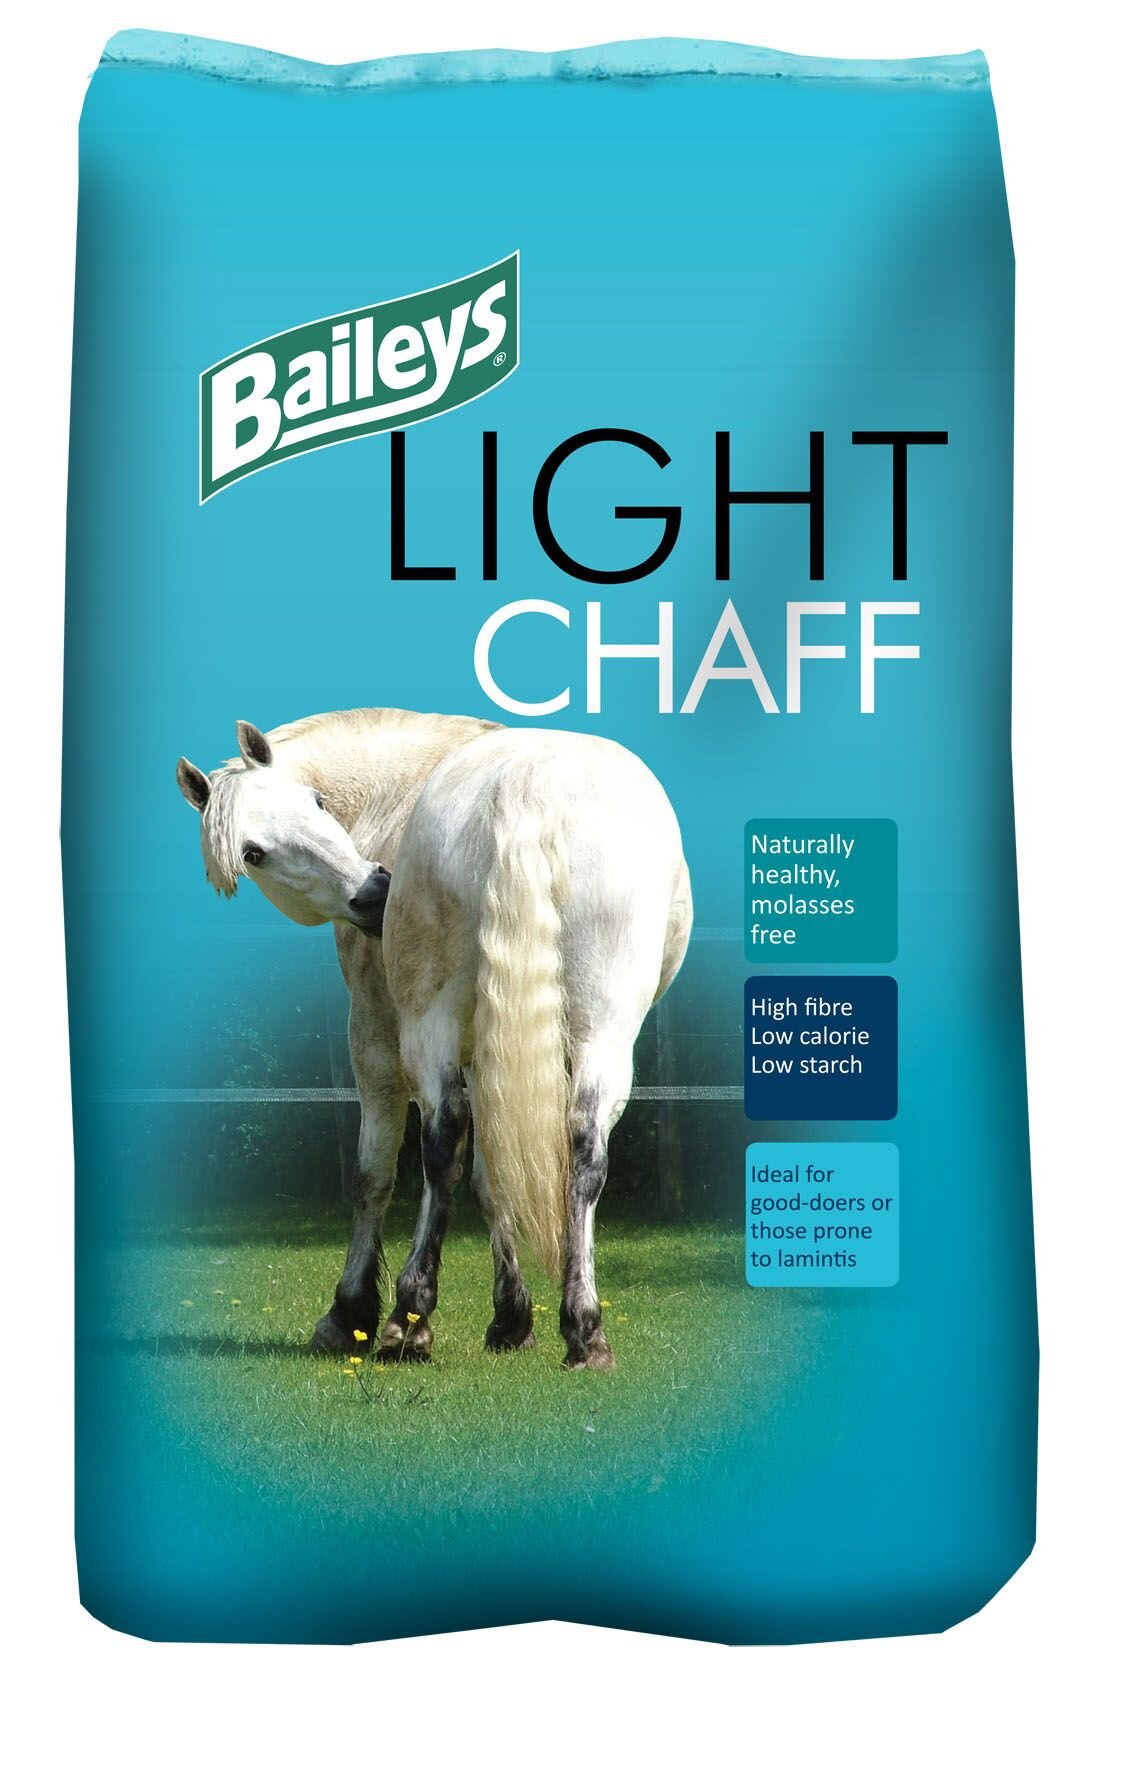 Baileys Light Chaff